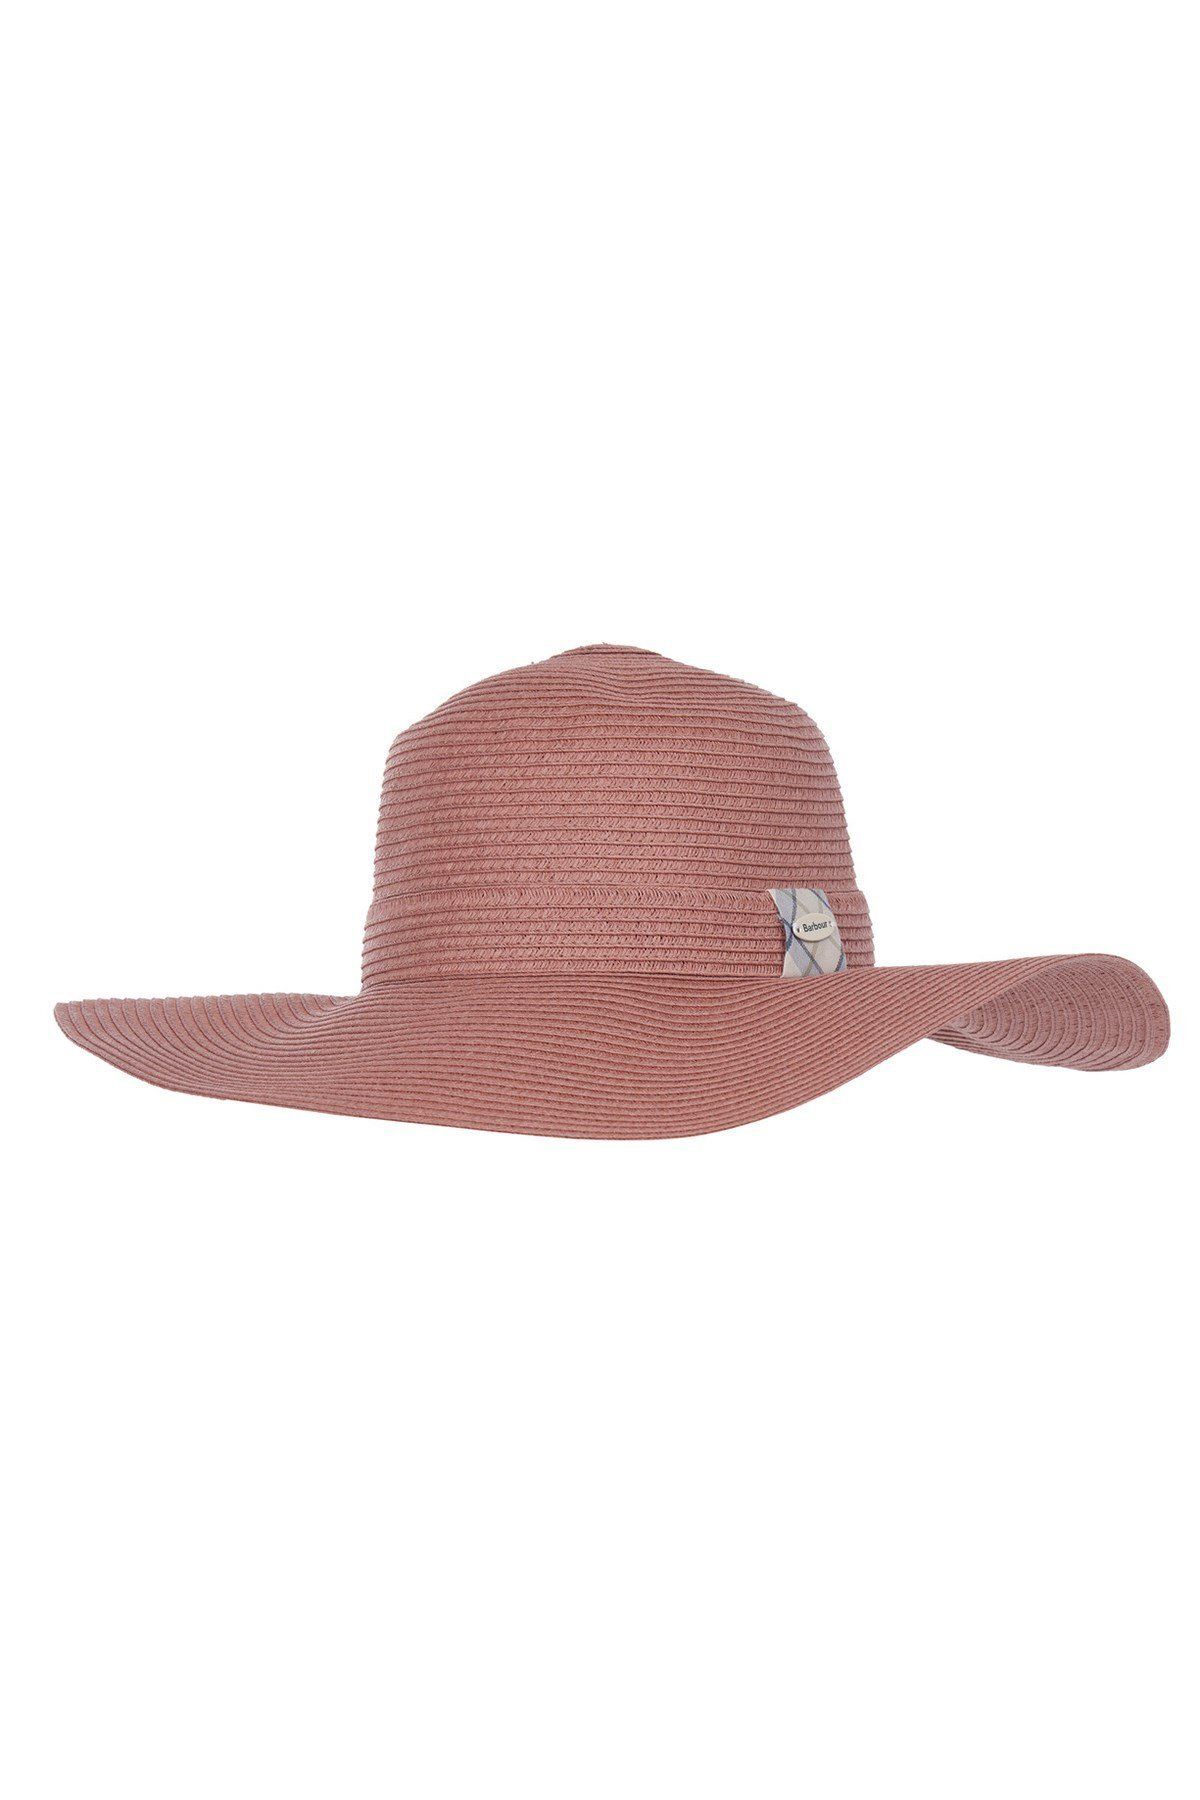 Barbour Wellwood Tartan Plaj Şapkası Pı19 Rose